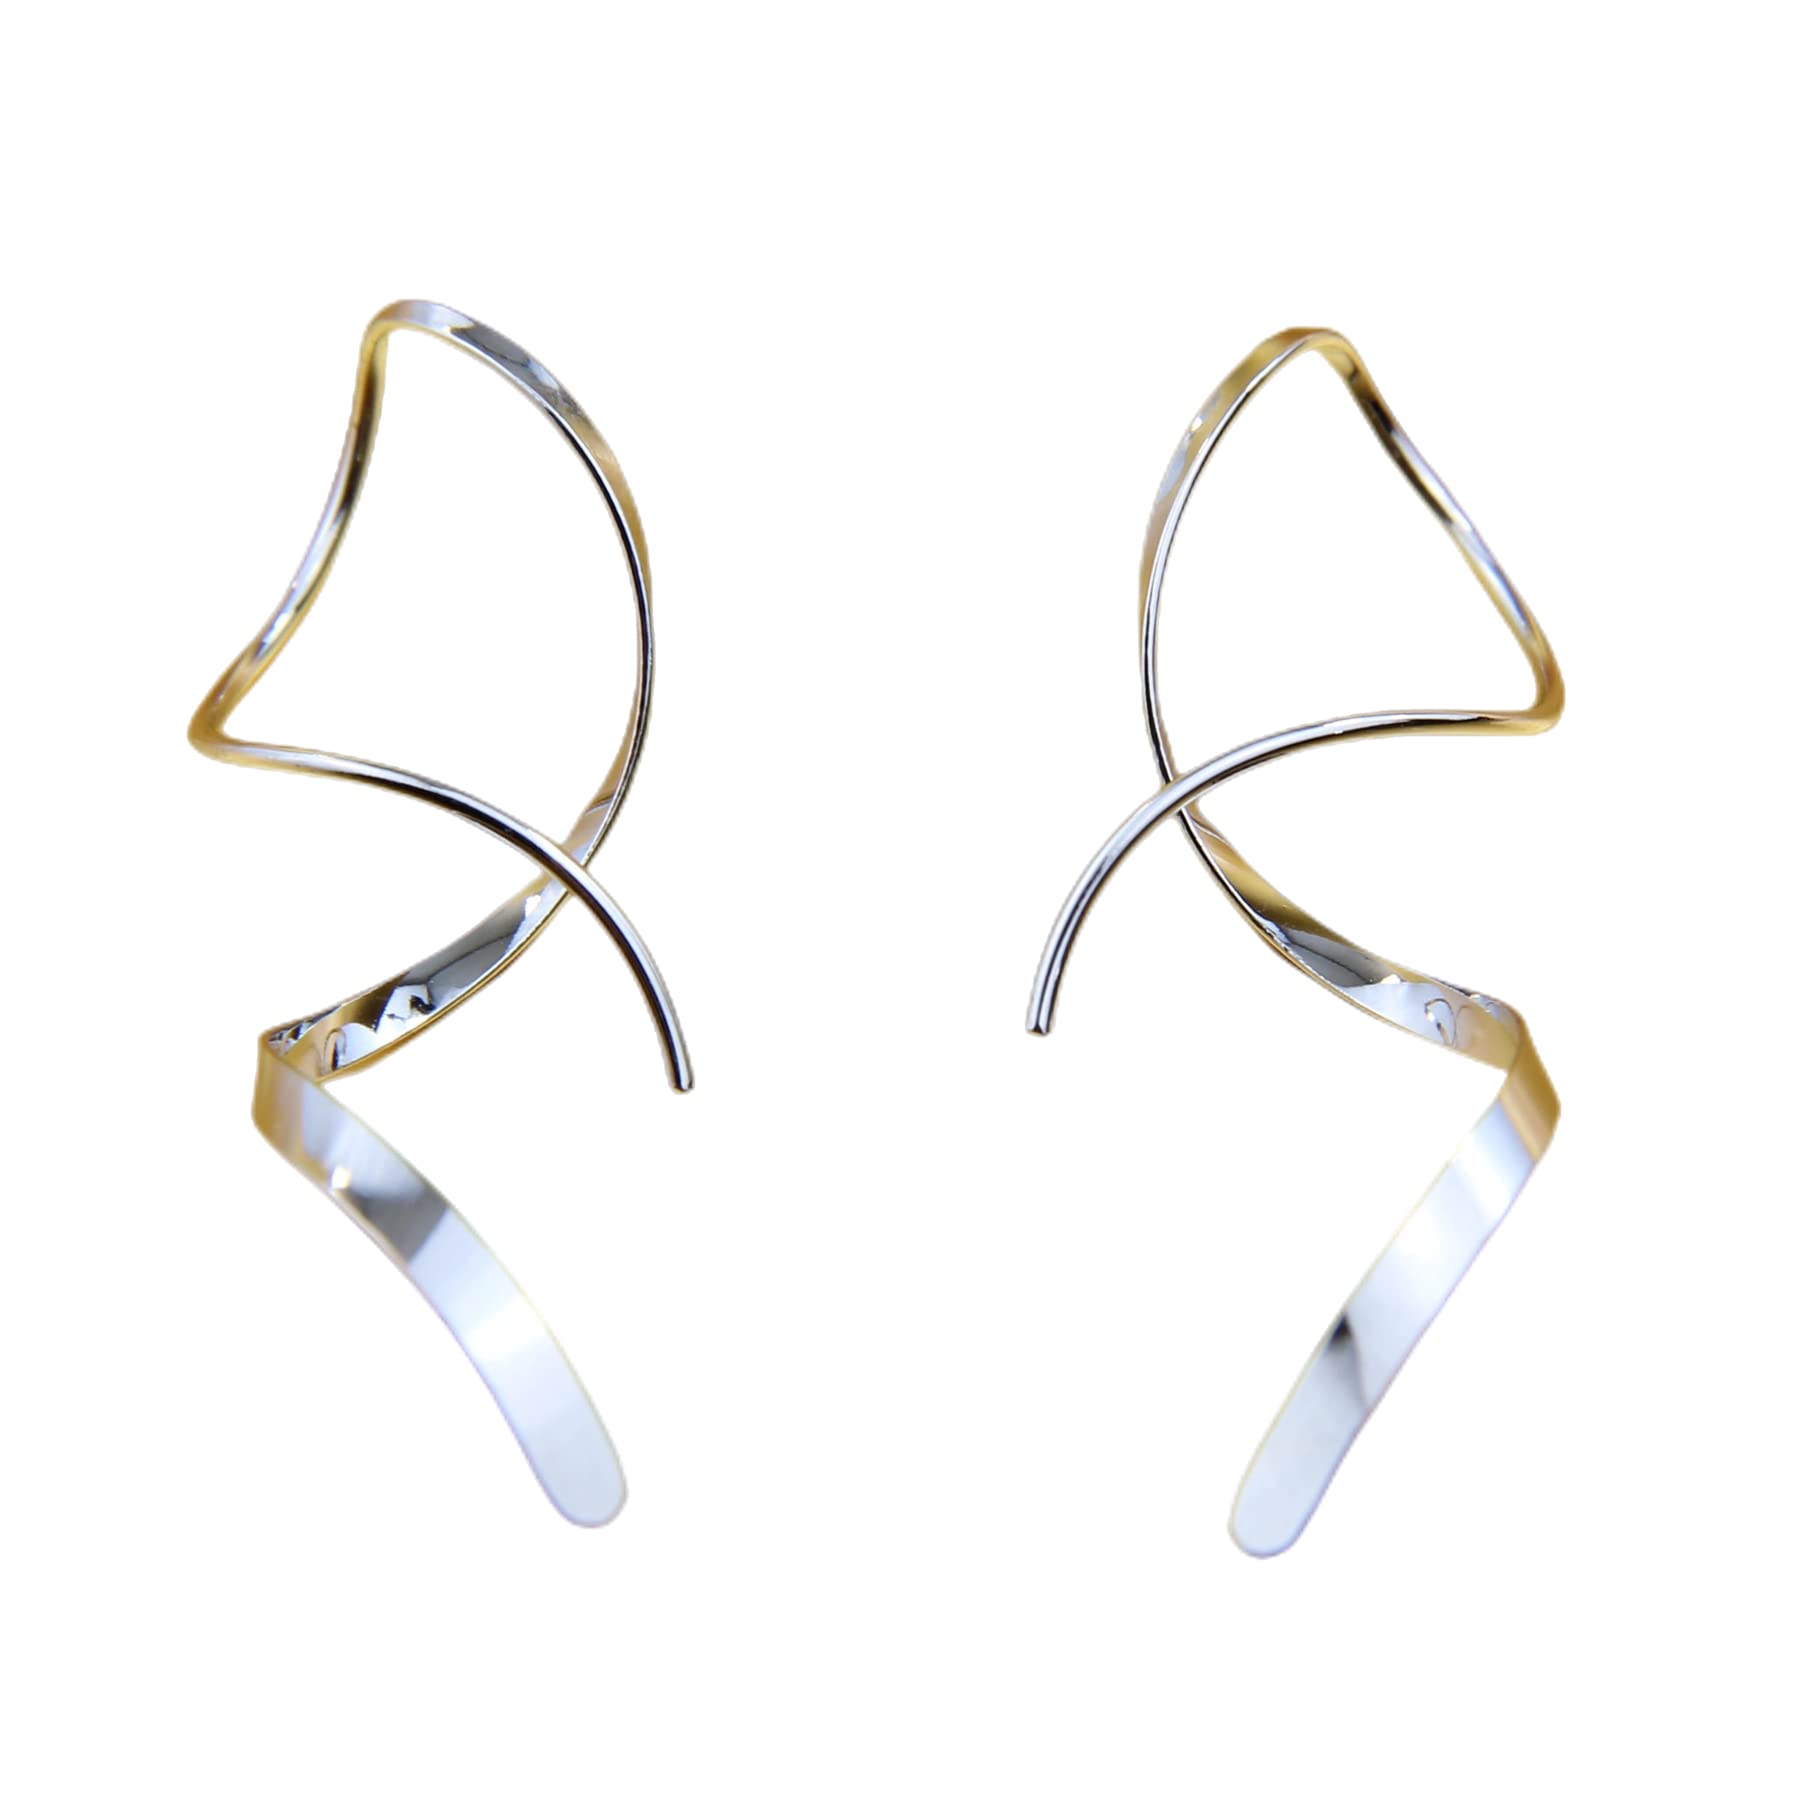 Earrings for Women Spiral threader earrings 14K gold earrings hand bent dangle earrings for women